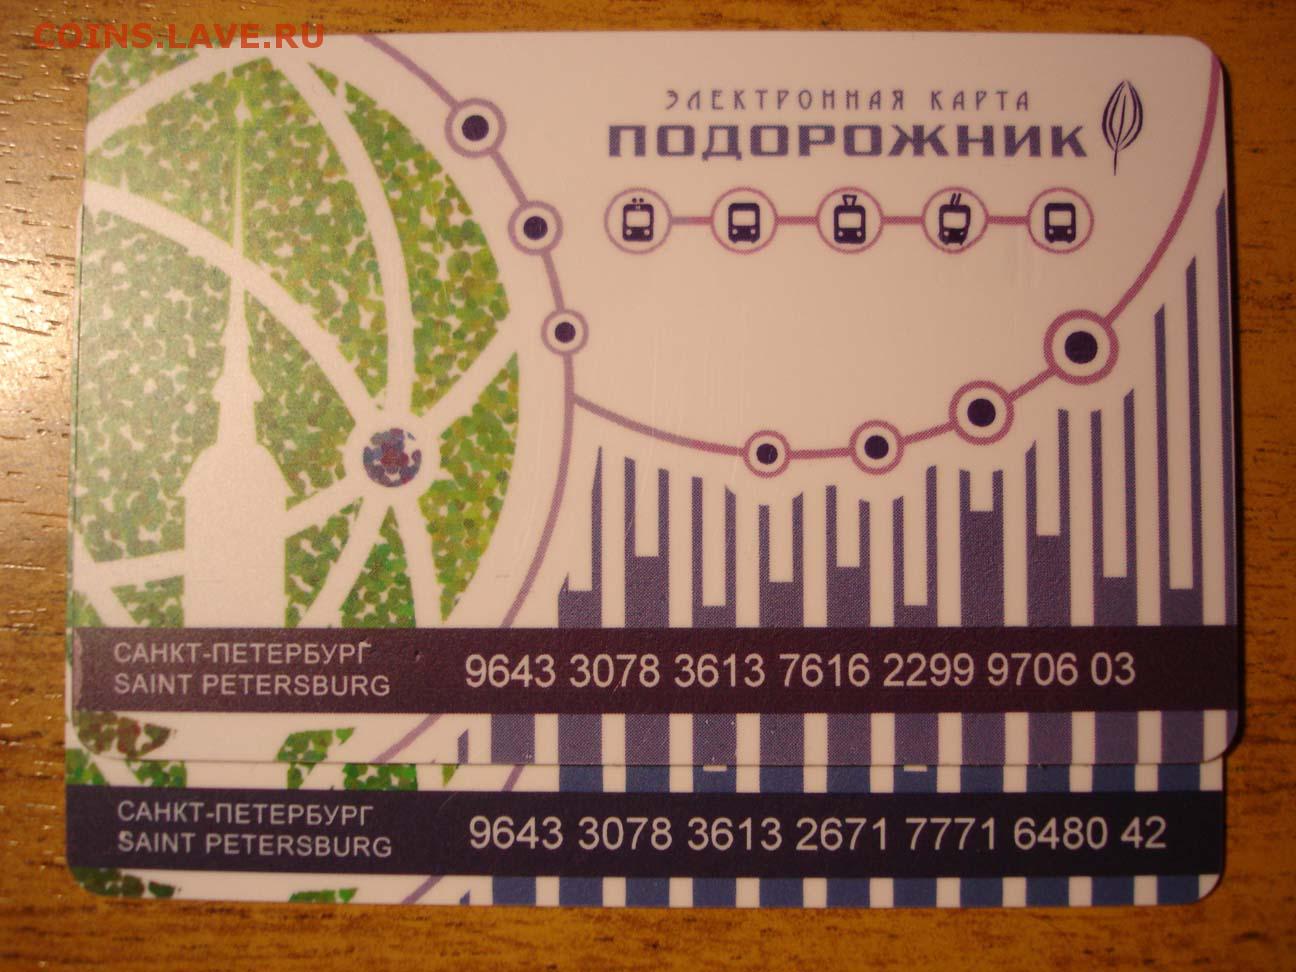 Карта петербуржца подорожник. Карта подорожник Санкт-Петербург. Электронная карта подорожник. Карта метро подорожник в СПБ.